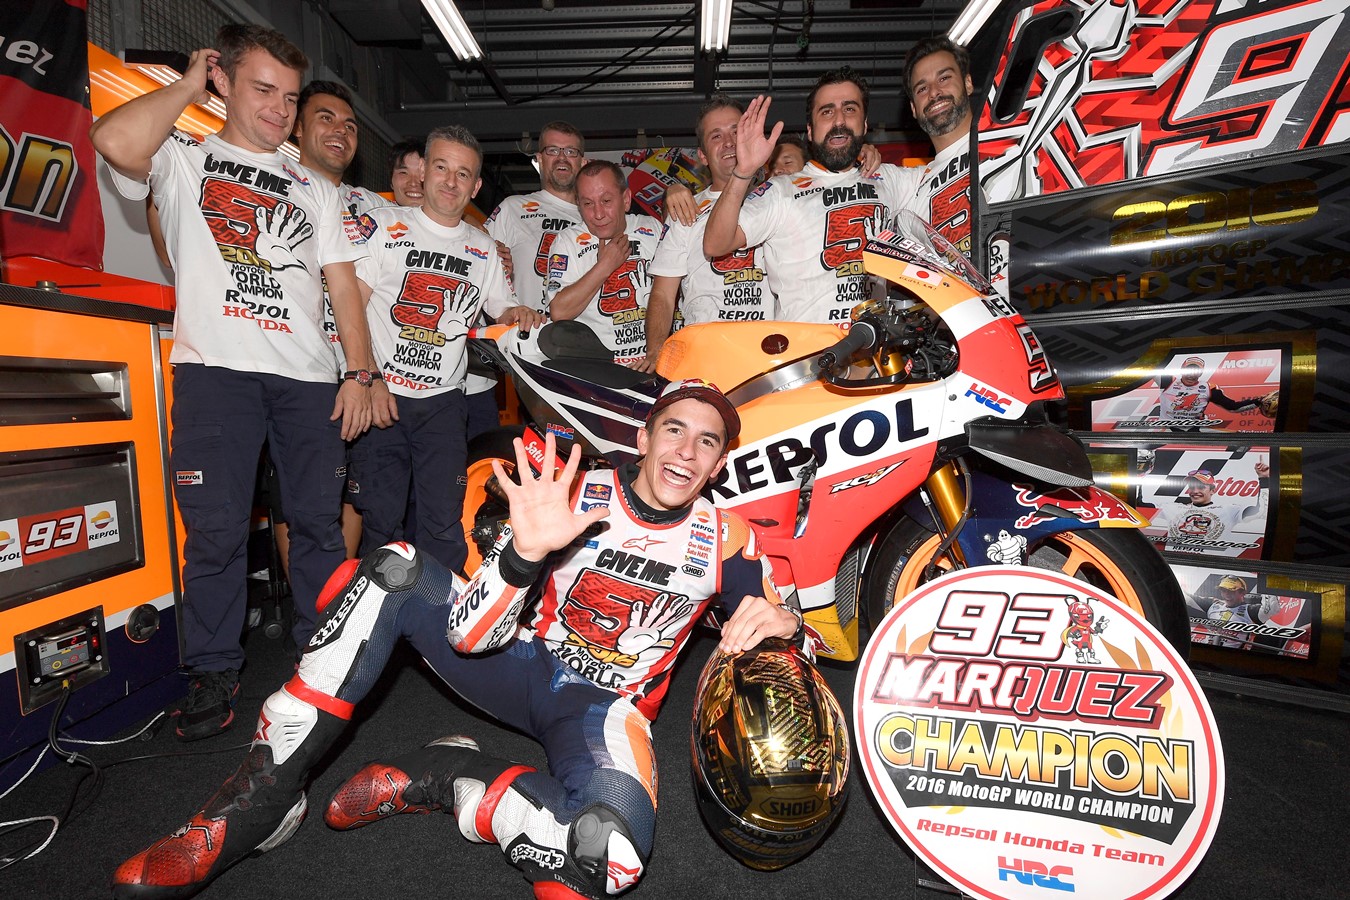 Marquez Dominates at Motegi to Win Third MotoGP Crown